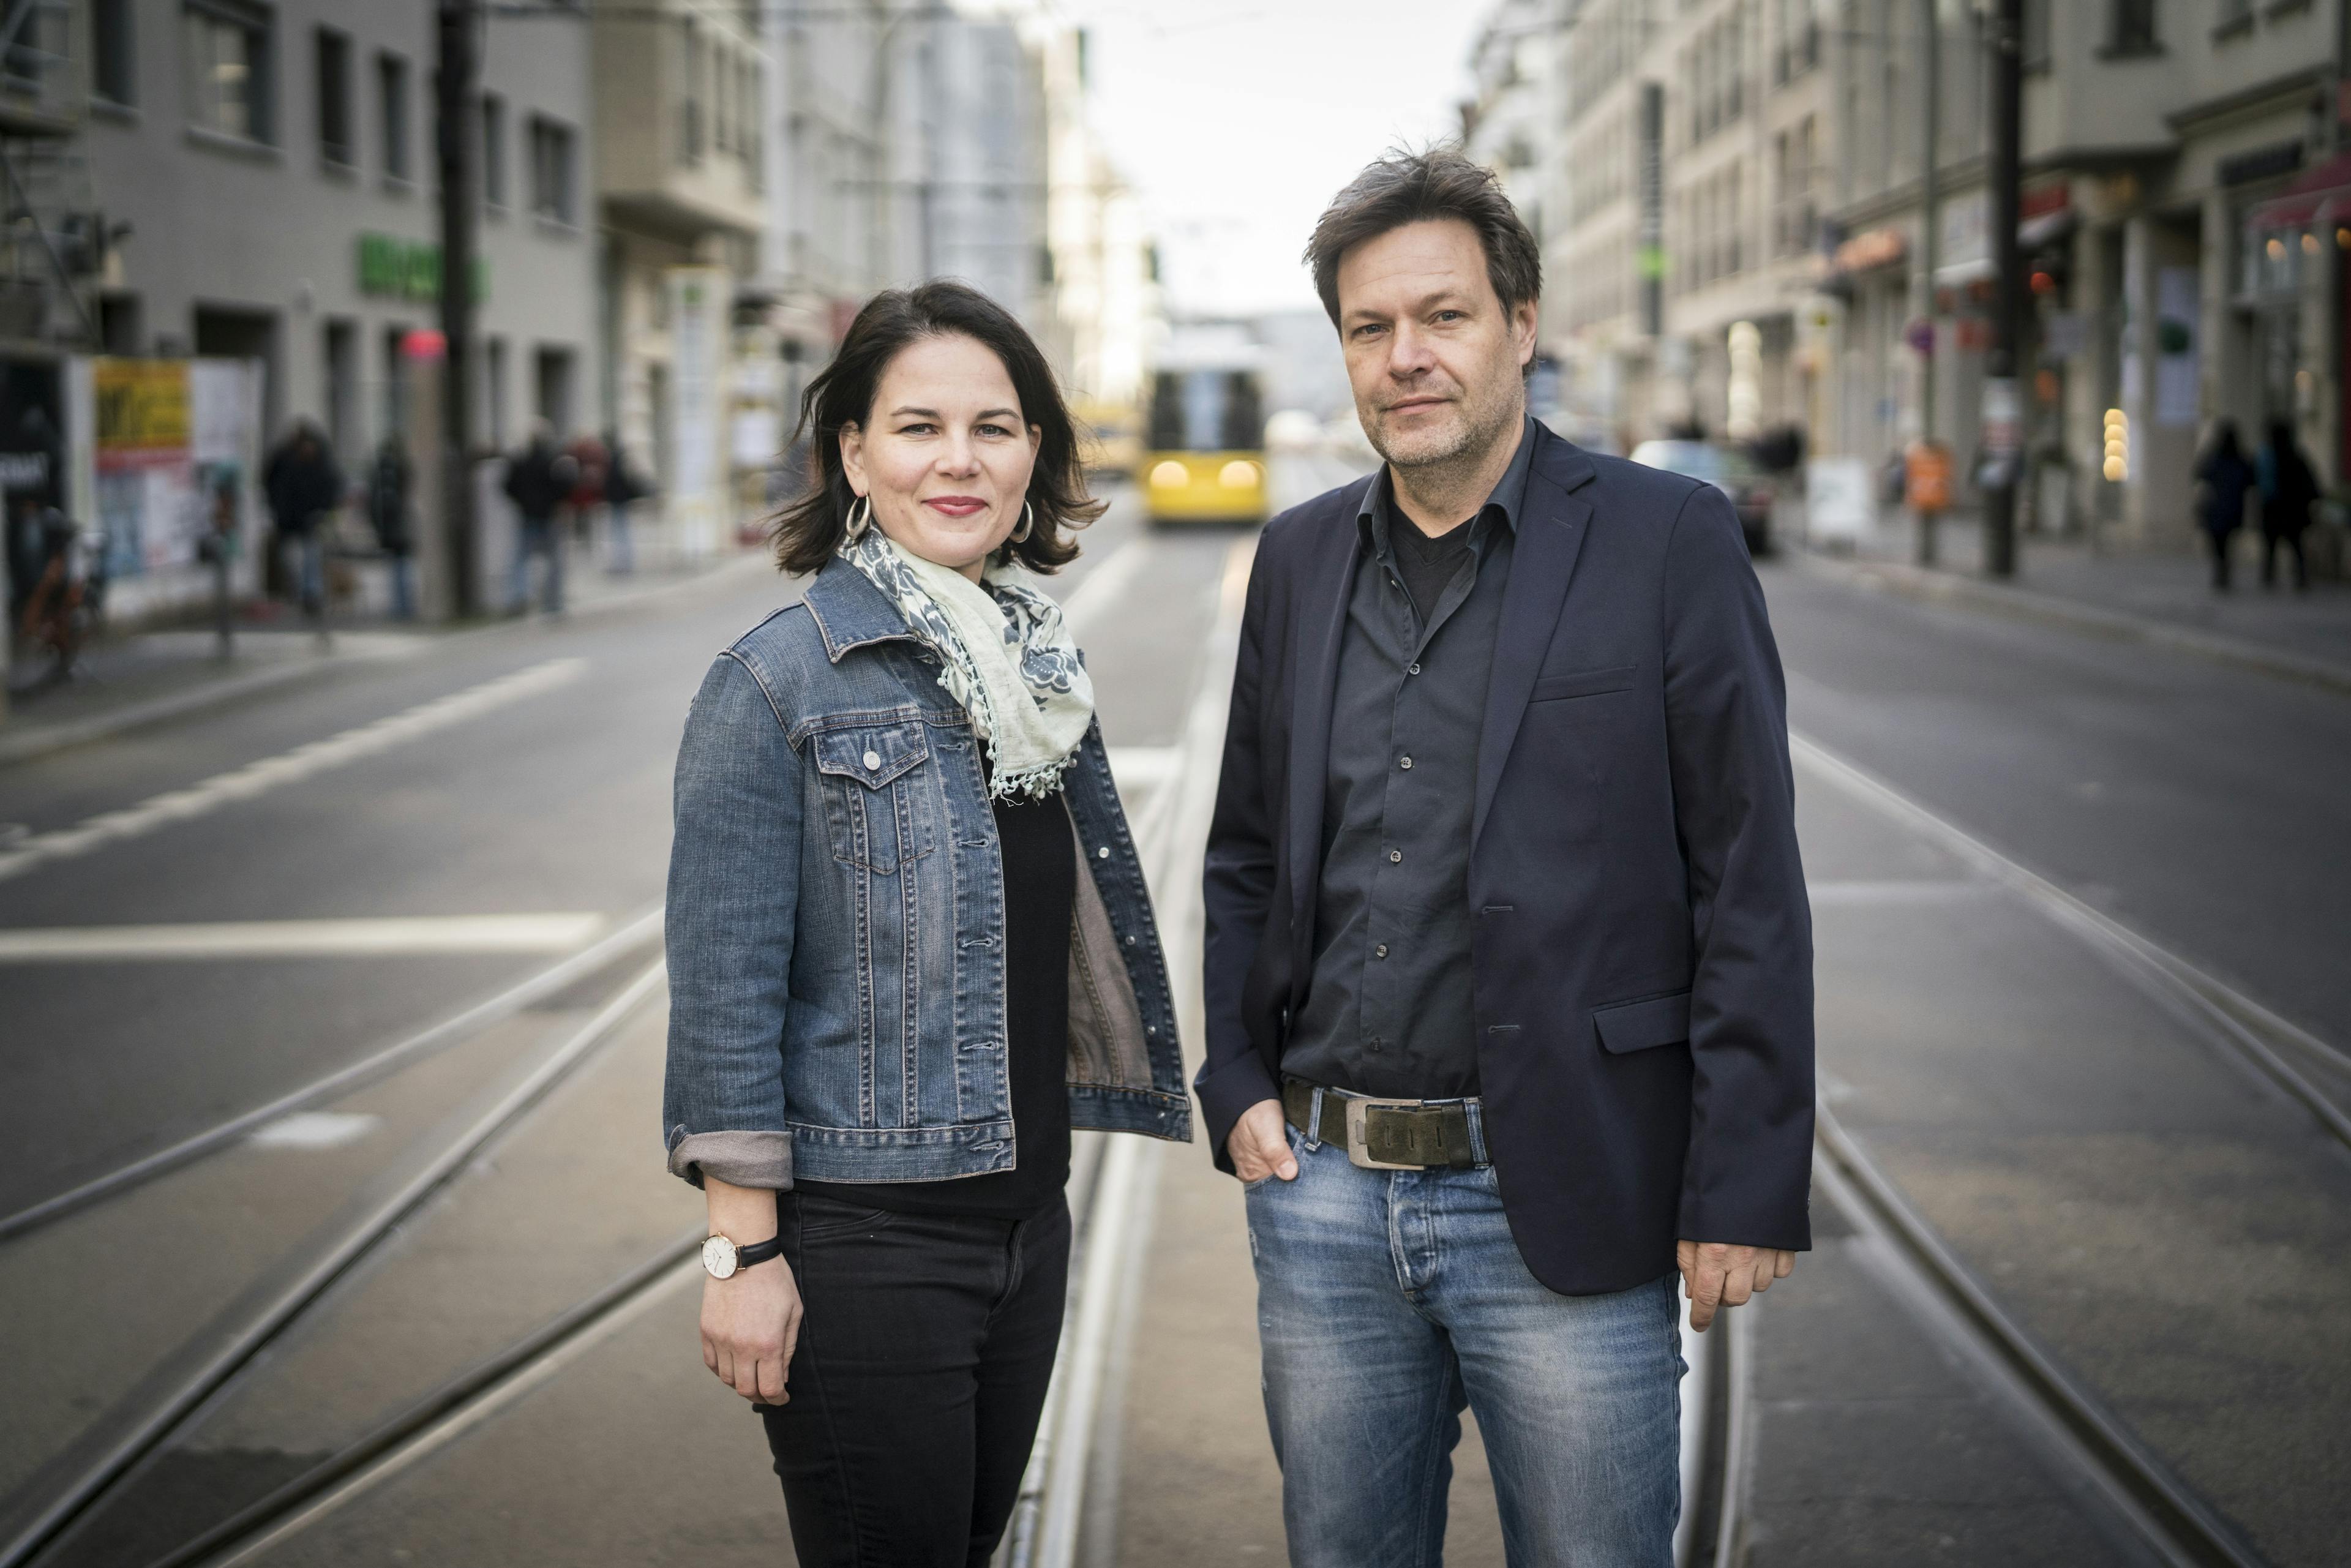 Annalena Baerbock und Robert Habeck stehen gemeinsam mitten auf einer Straße mit Bahnschienen. Im Hintergrund sind Häuser und eine Straßenbahn zu sehen.